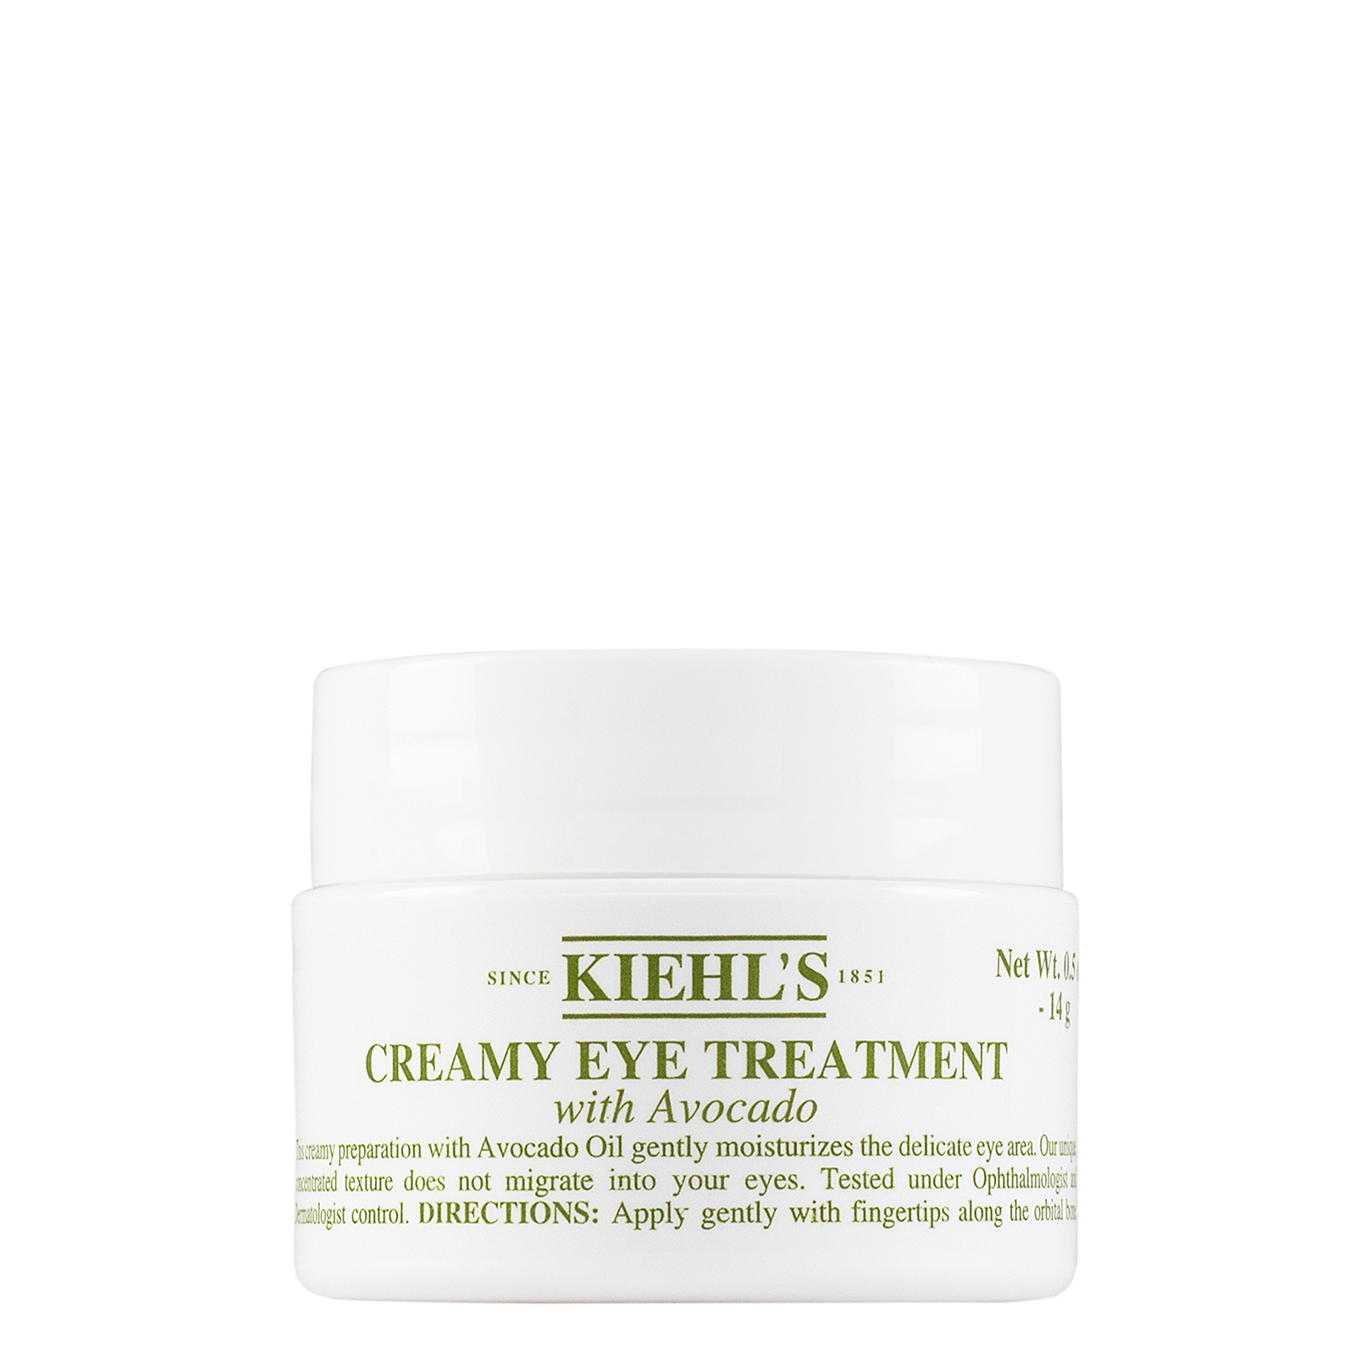 Kiehl's Creamy Eye Treatment With Avocado 14g